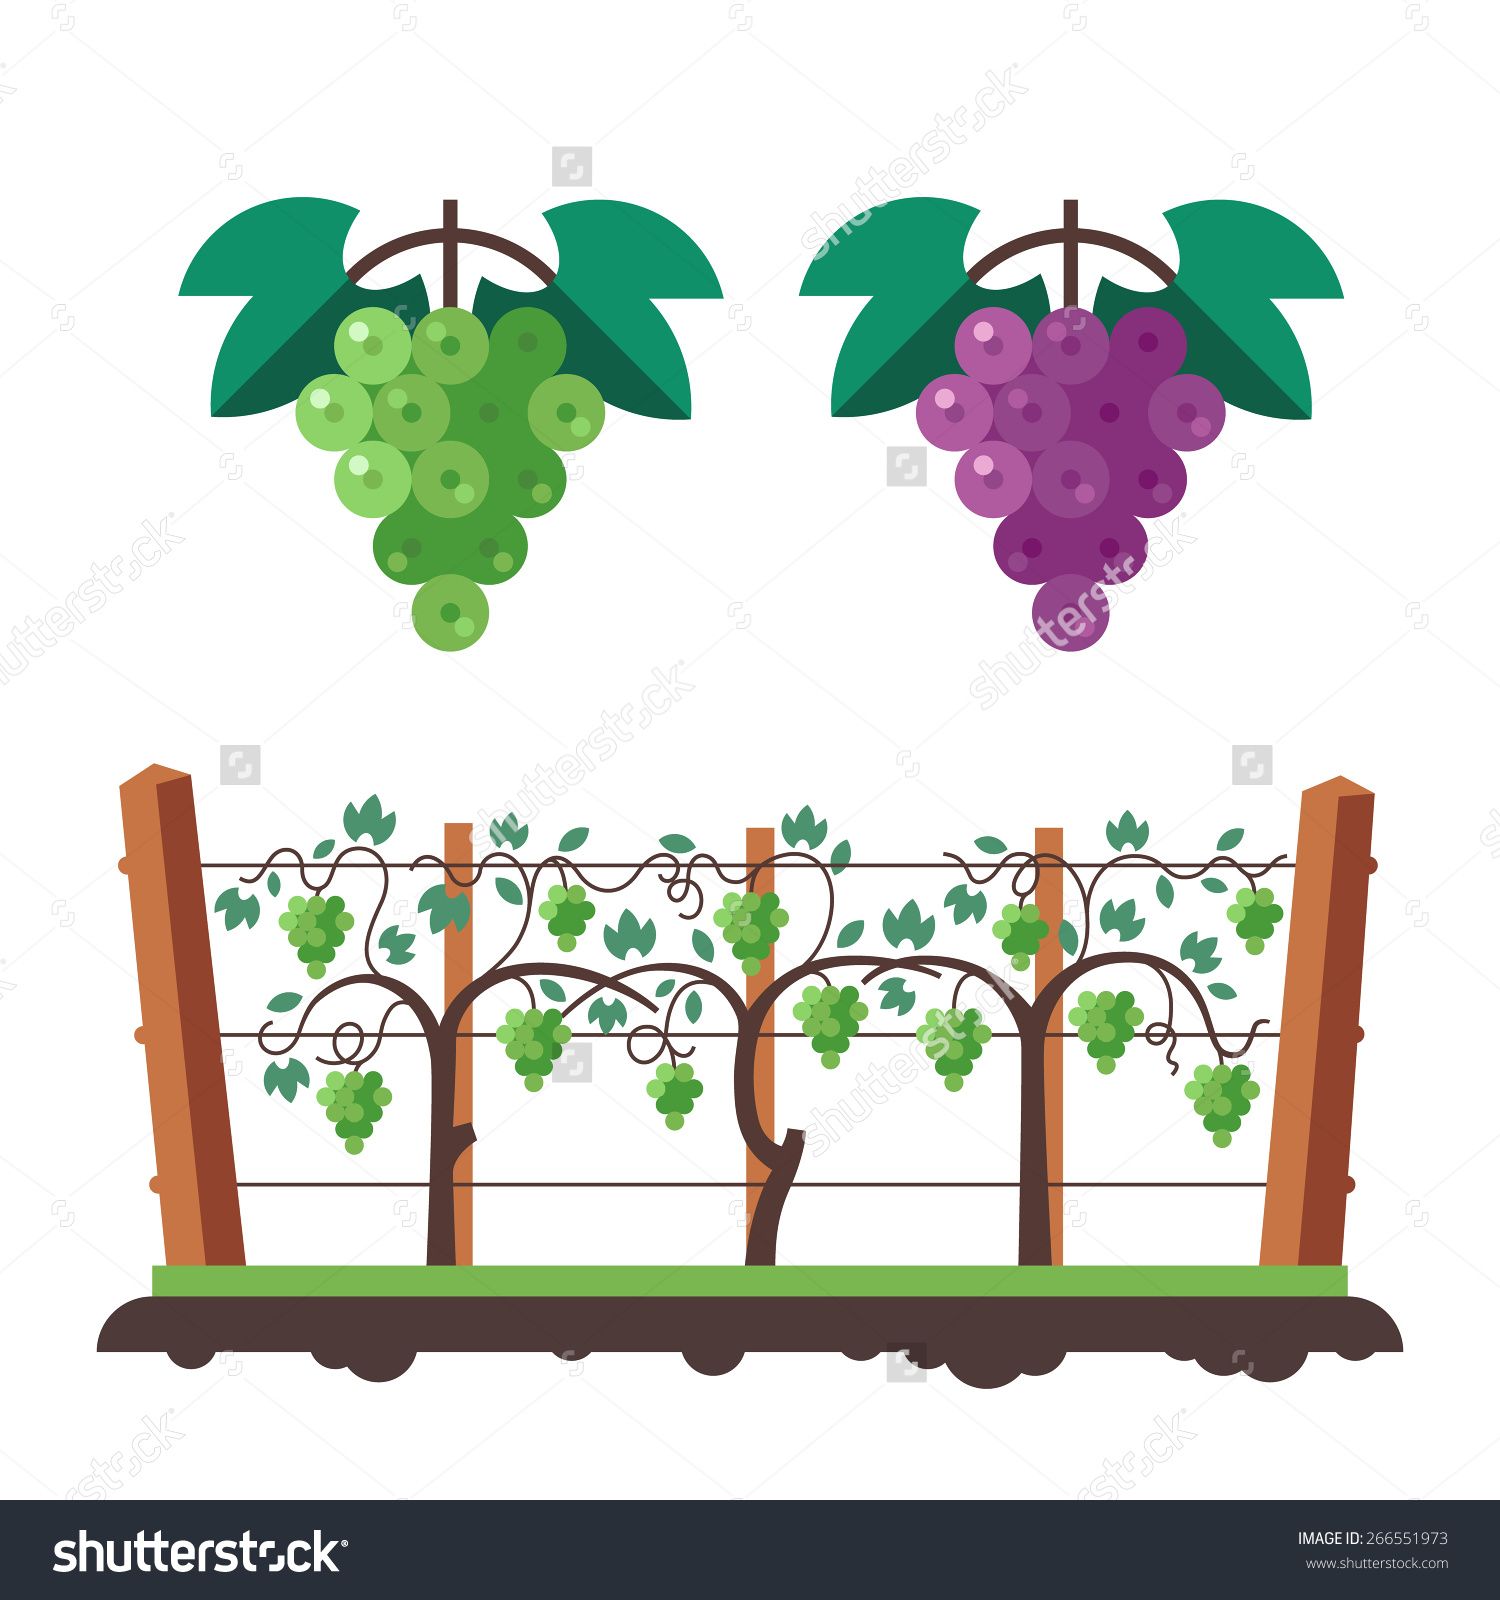 Grapes and vineyard.